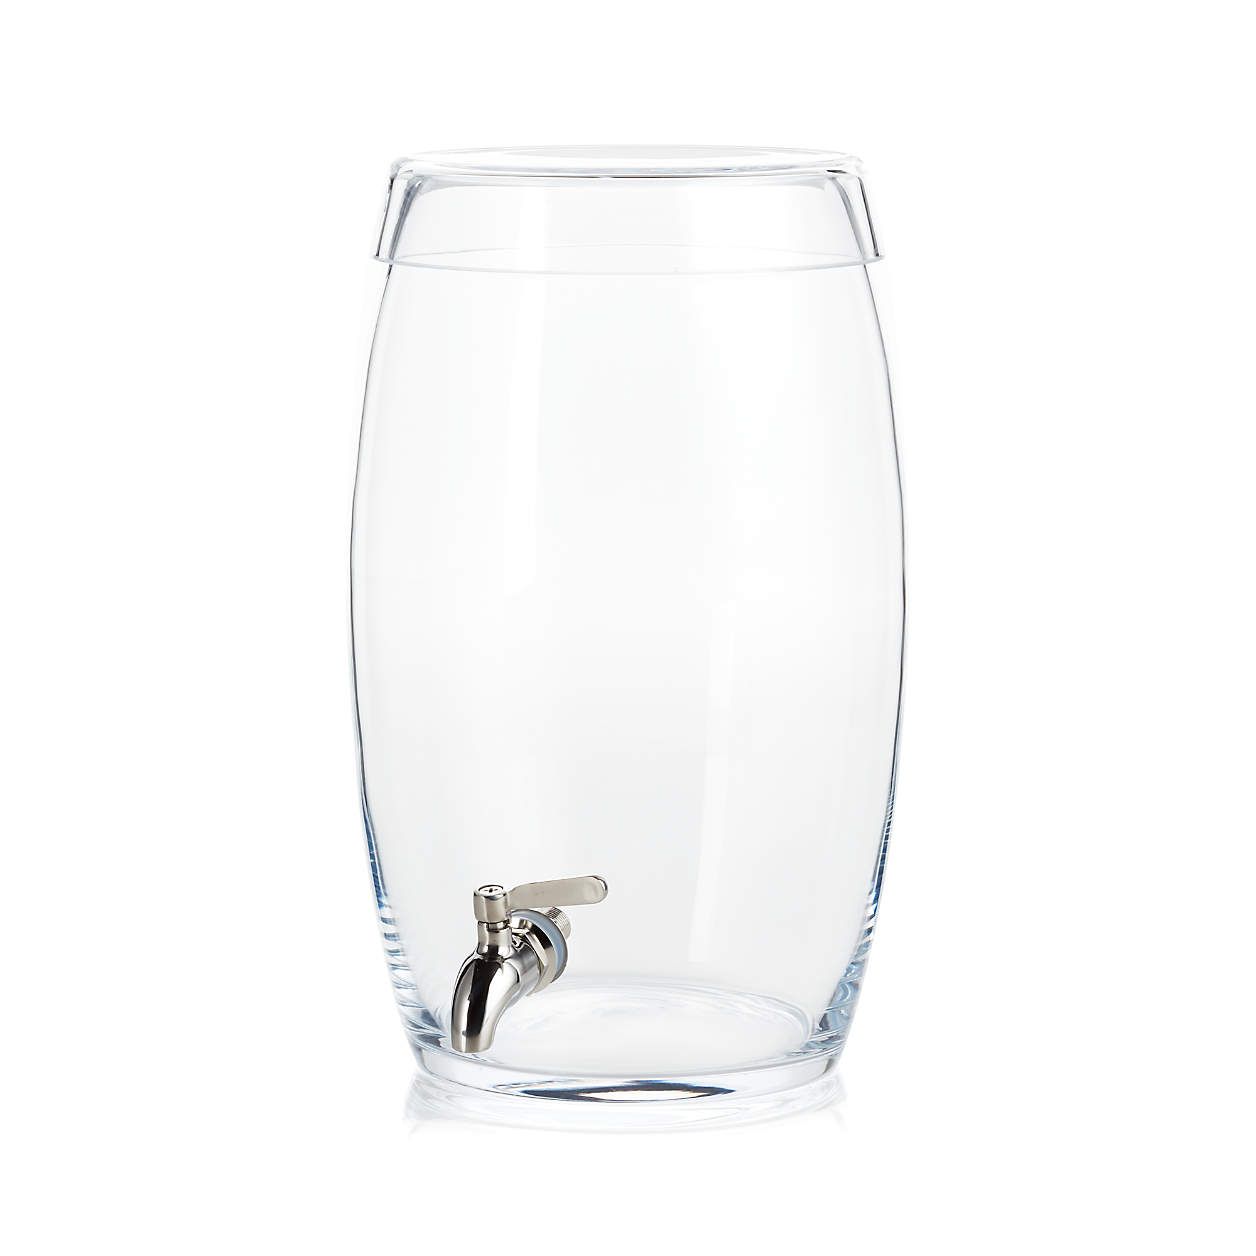 Marin Oregon Glass Drink Dispenser + Reviews | Crate & Barrel | Crate & Barrel